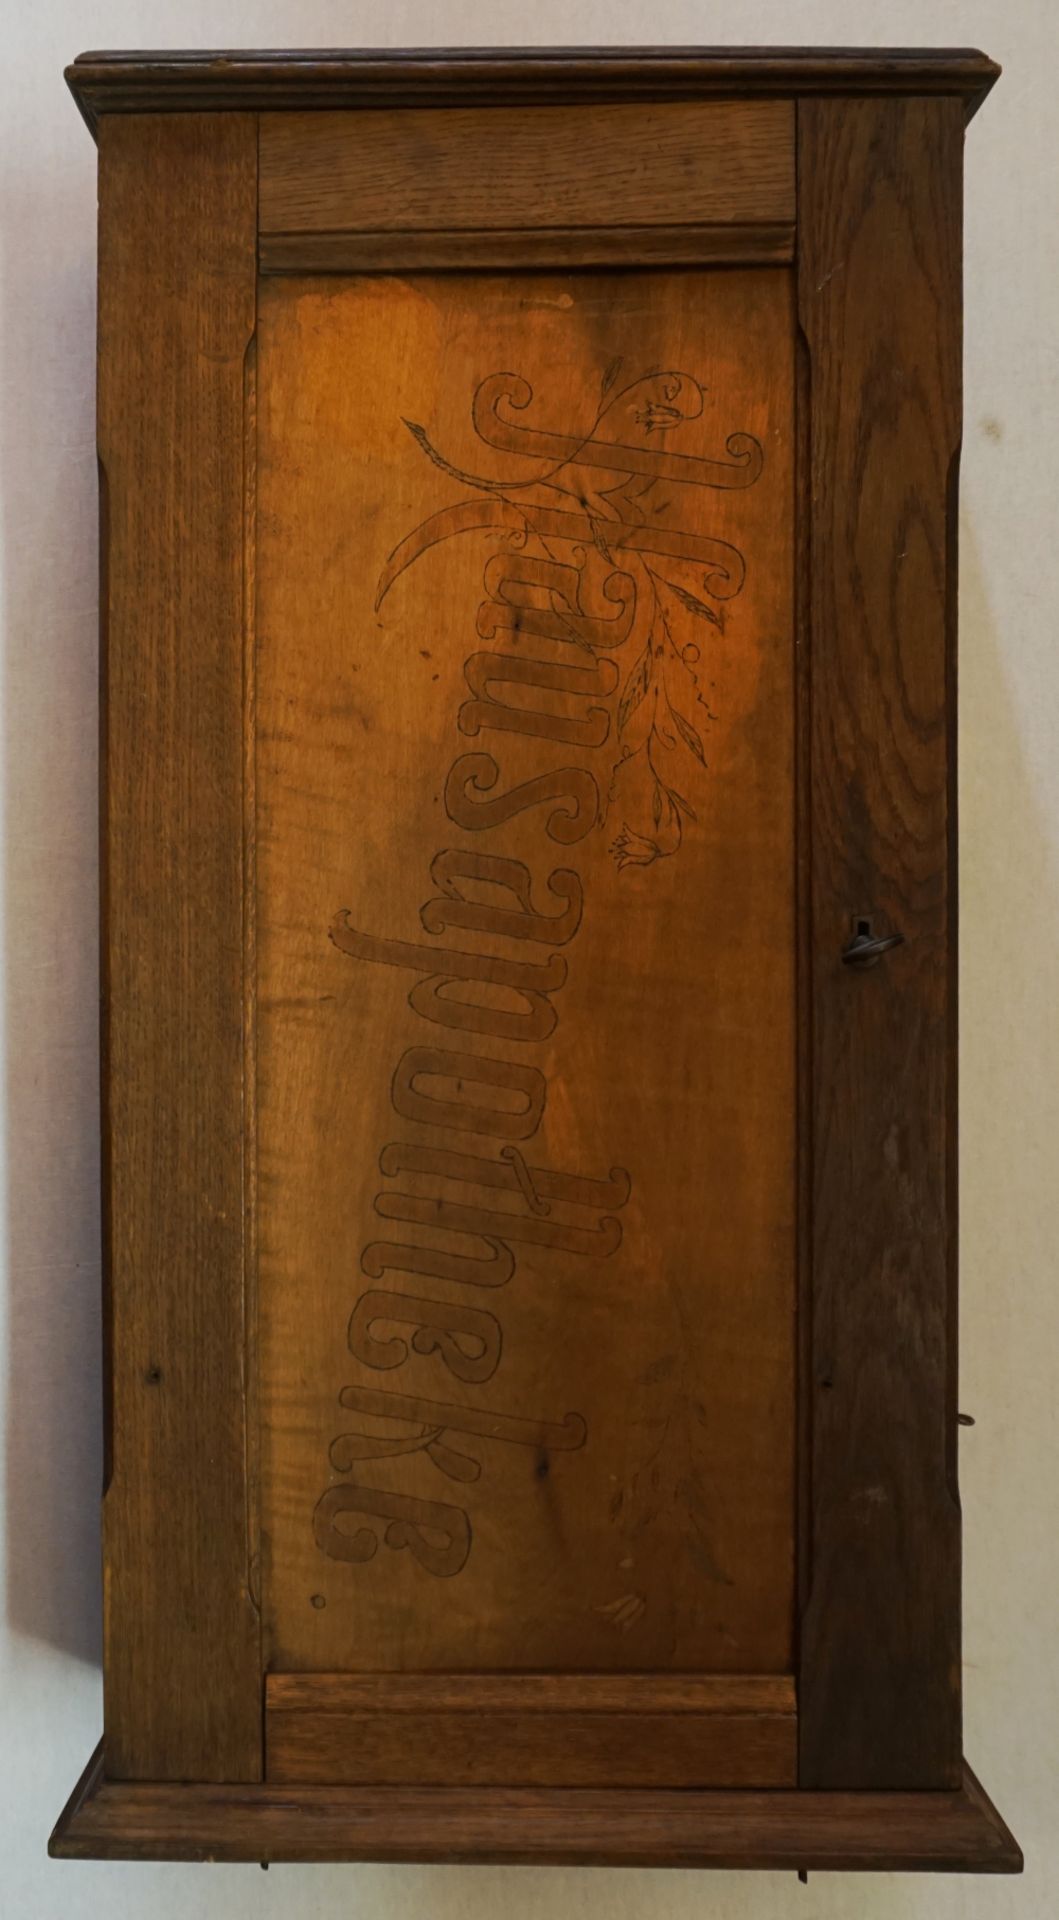 1 Regulator wohl Ende 19. Jh., Holz beschnitzt, Pendel, 2 Gewichte, H ca. 123cm, min. besch. (Aufhän - Bild 3 aus 4